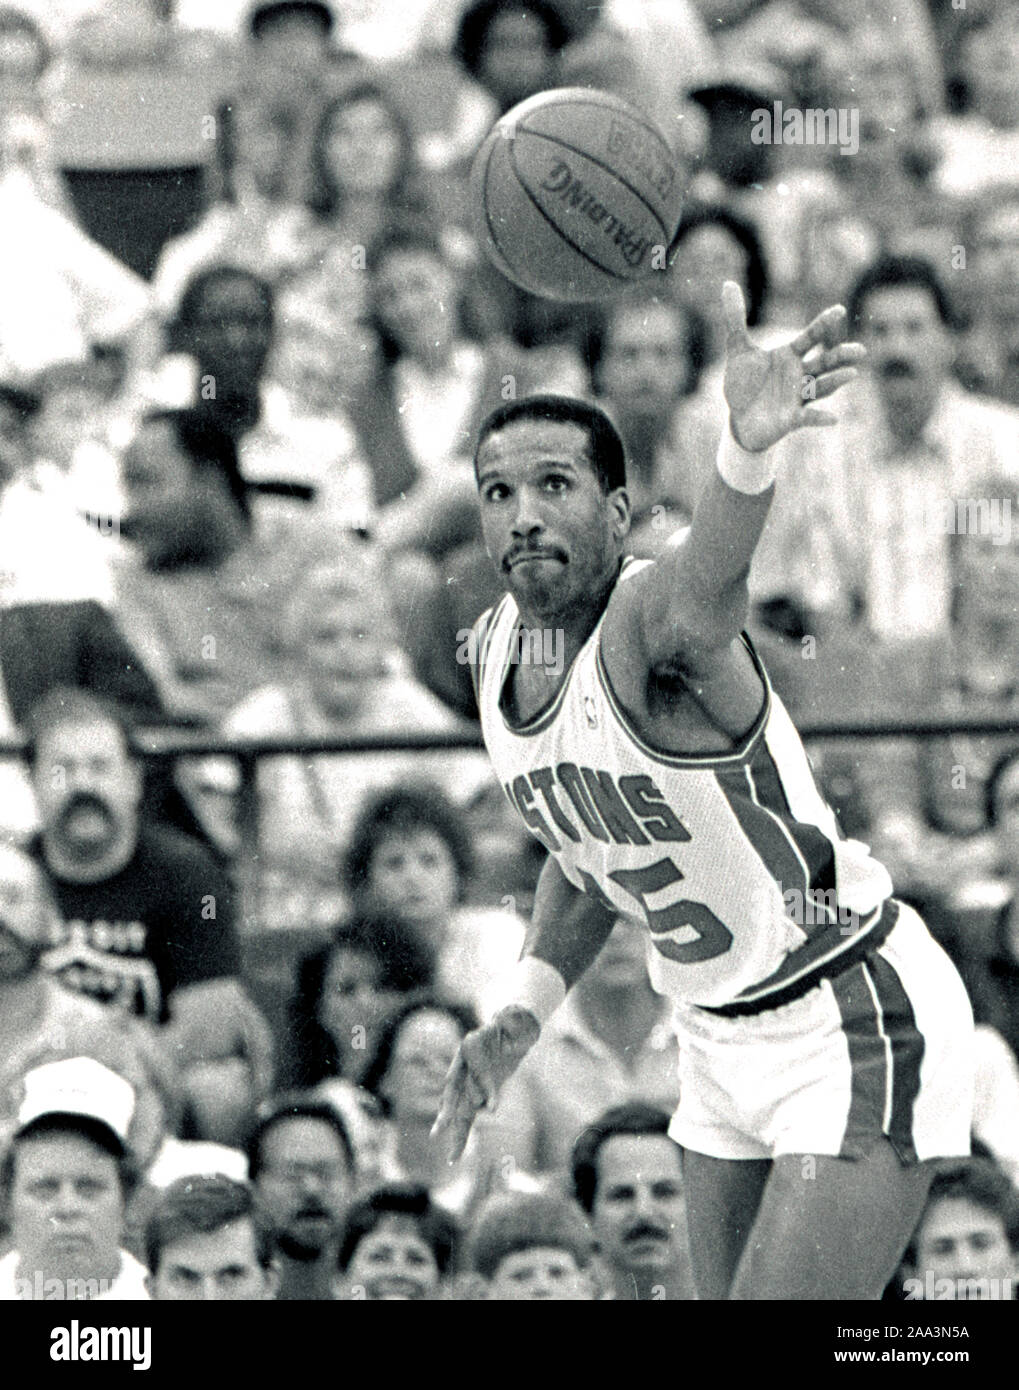 Detroit Pistons #15 Walker Russell spiel action im Jahr 1988 NBA Endspiele gegen die Boston Celtics in Detroit, Michigan USA Mai 1988 Foto von Bill belknap Stockfoto